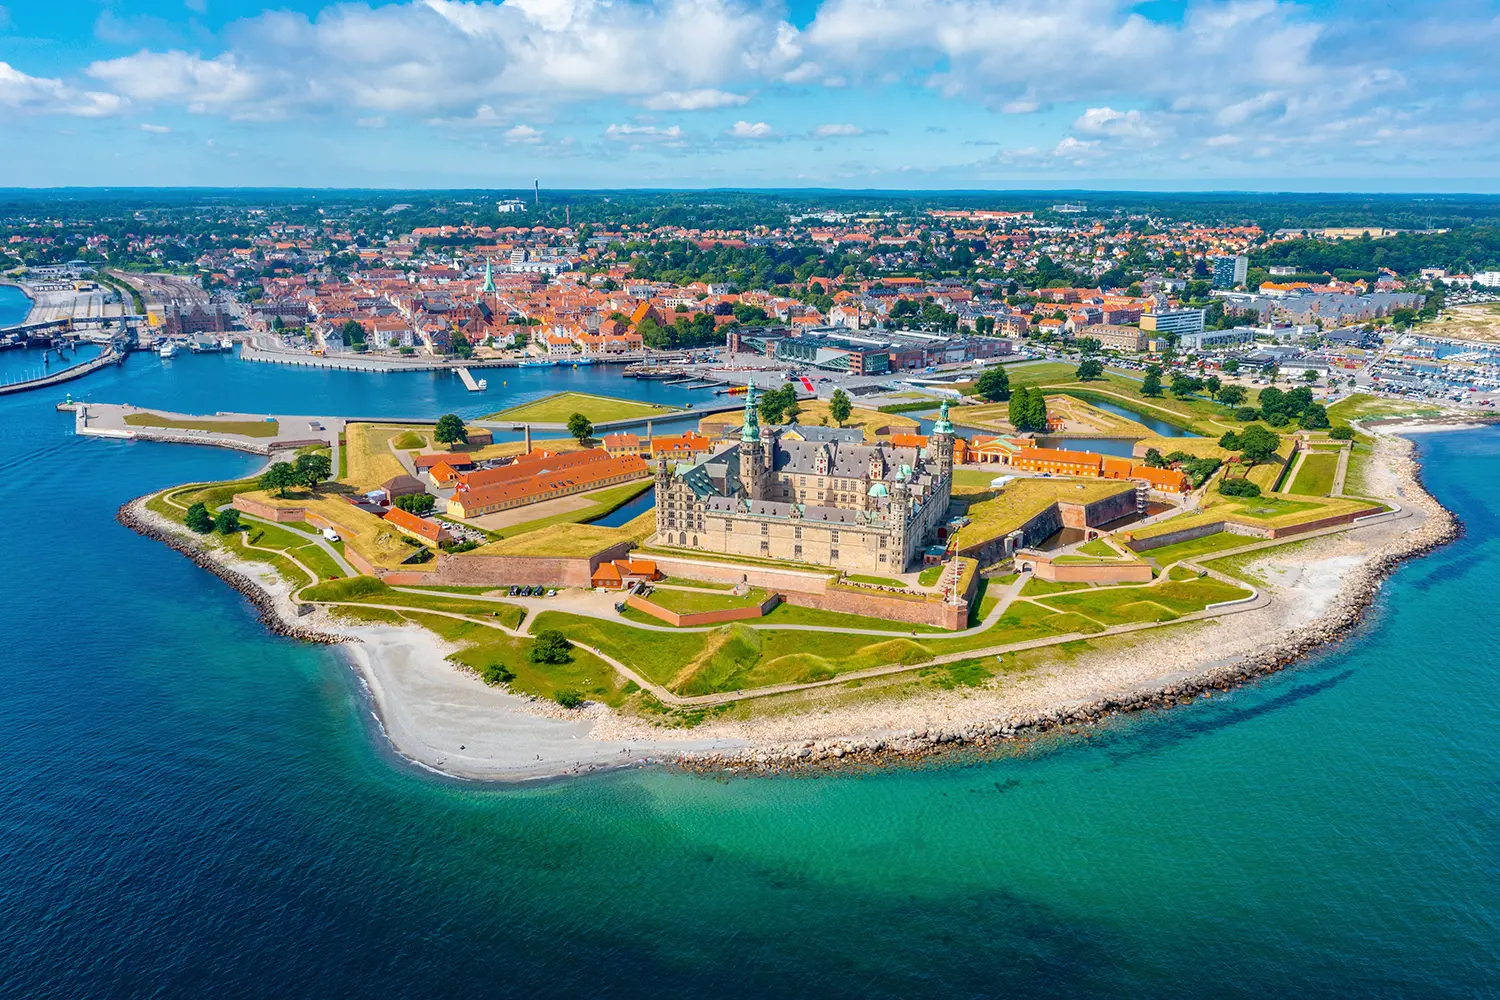 Panorama of the Kronborg castle in Helsingor, Denmark.